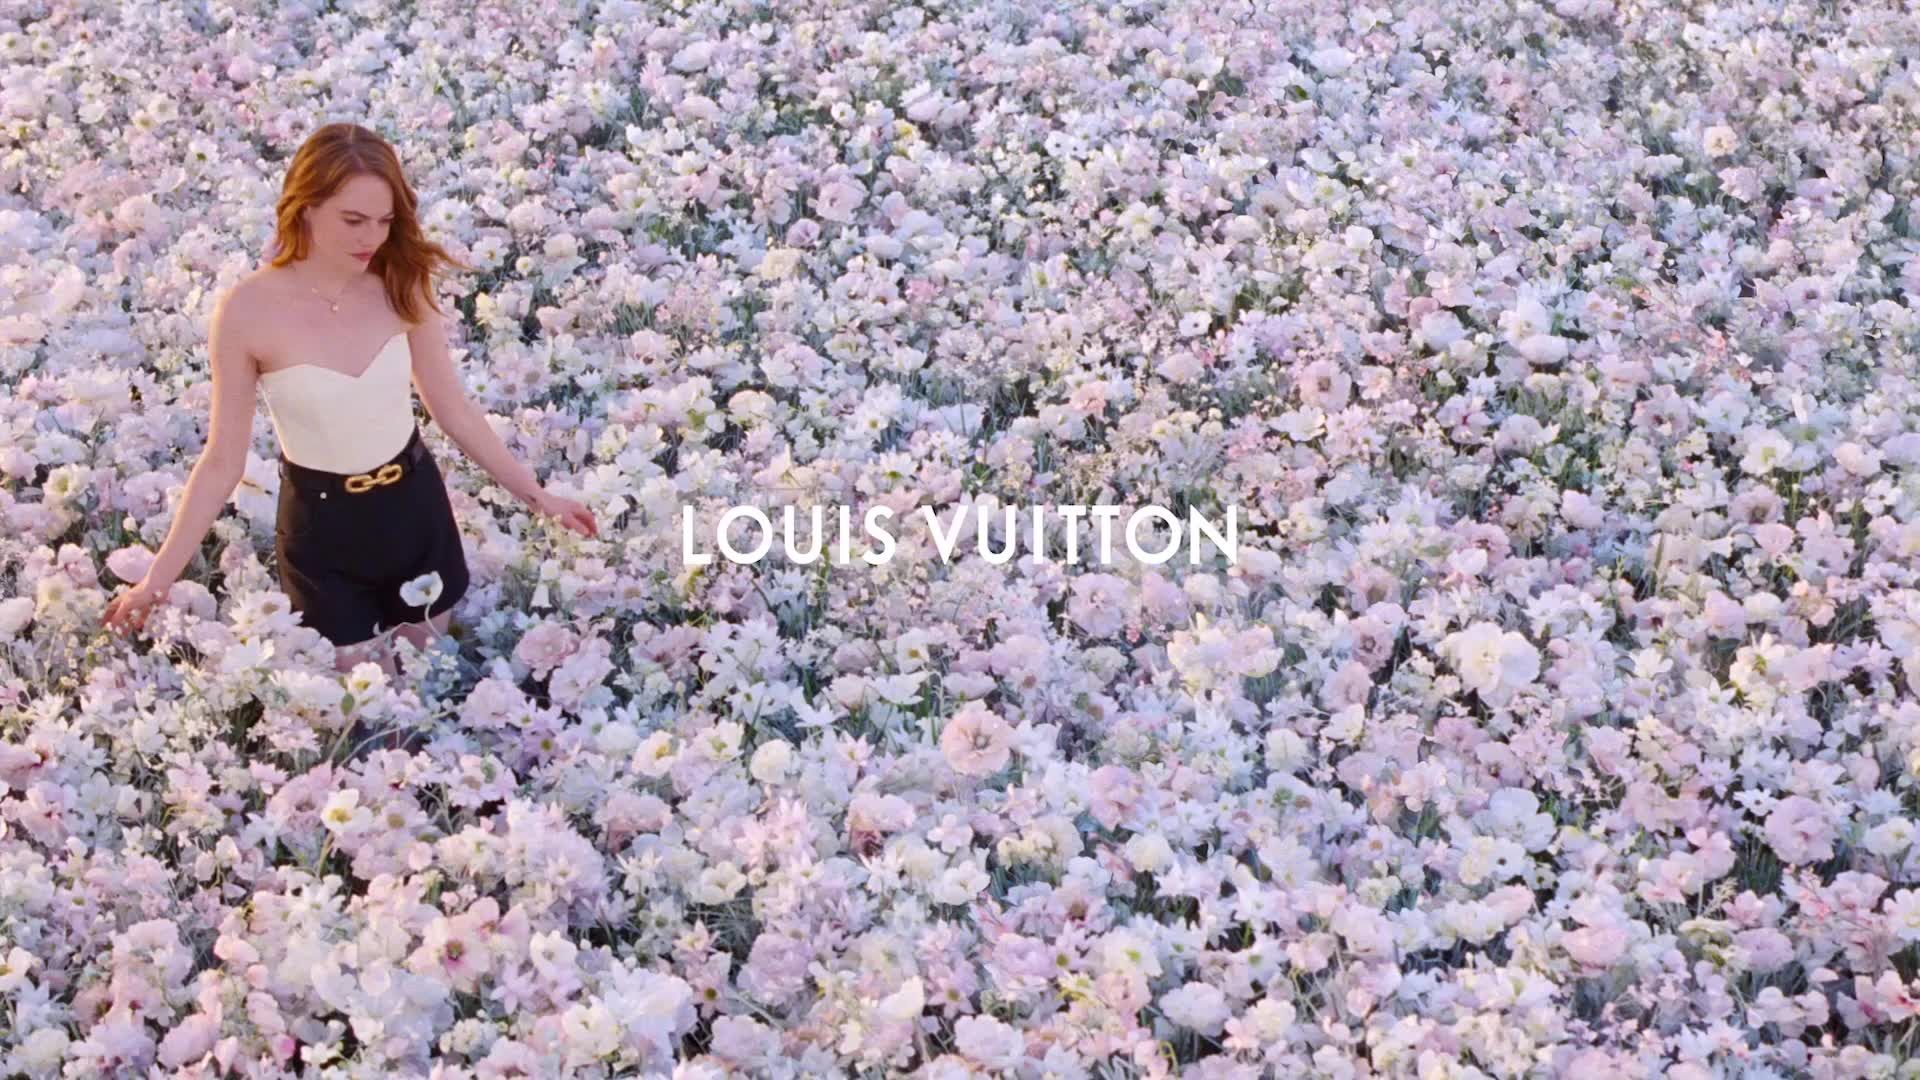 Louis Vuitton installs Yayoi Kusama lookalikes at stores